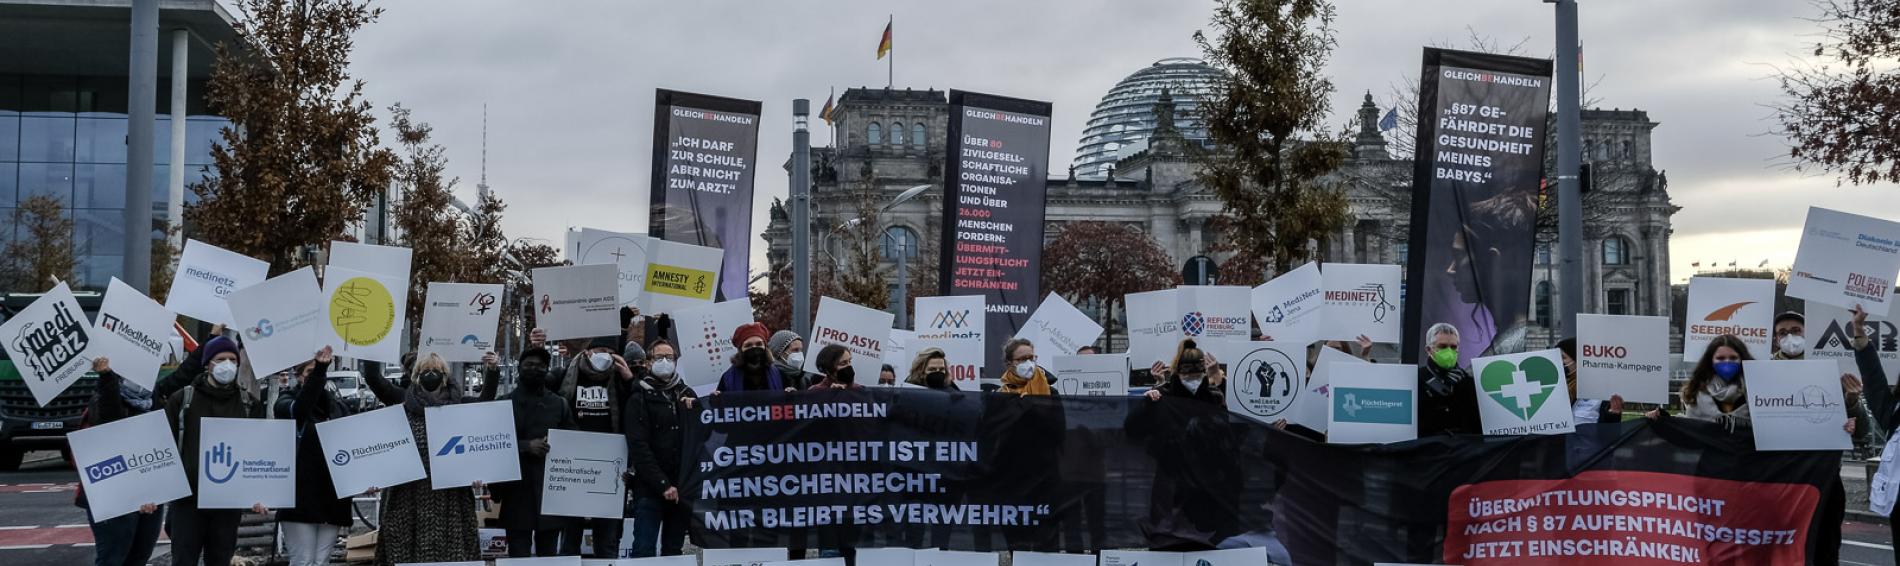 Das Bündnis Gleichbehandeln protestiert vor dem Bundestag.